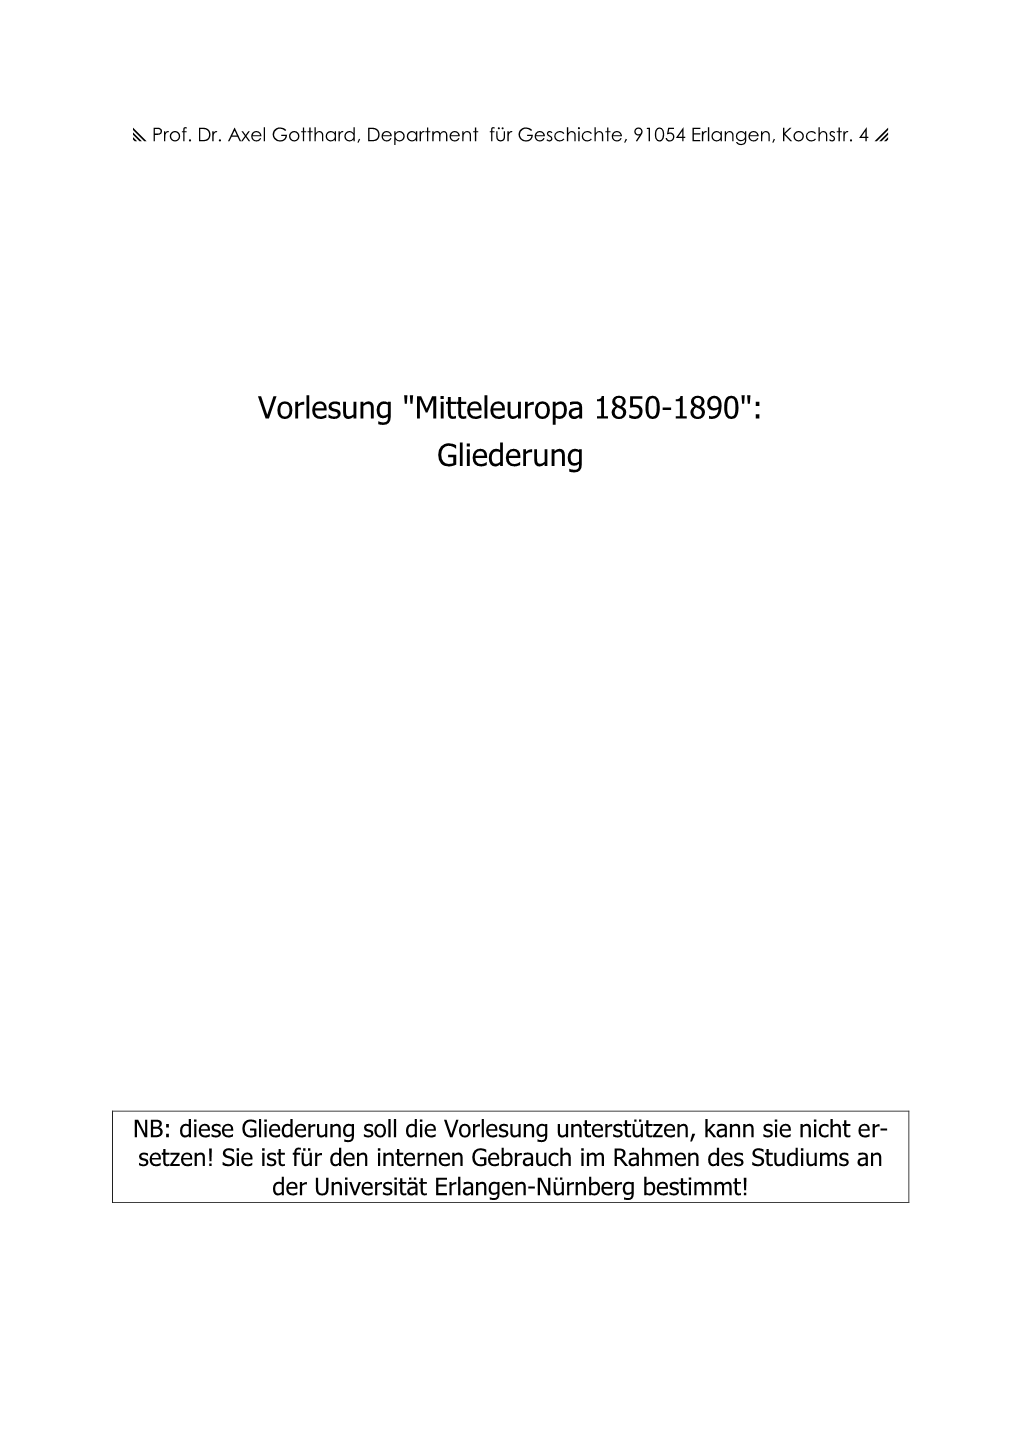 Mitteleuropa 1850-1890": Gliederung